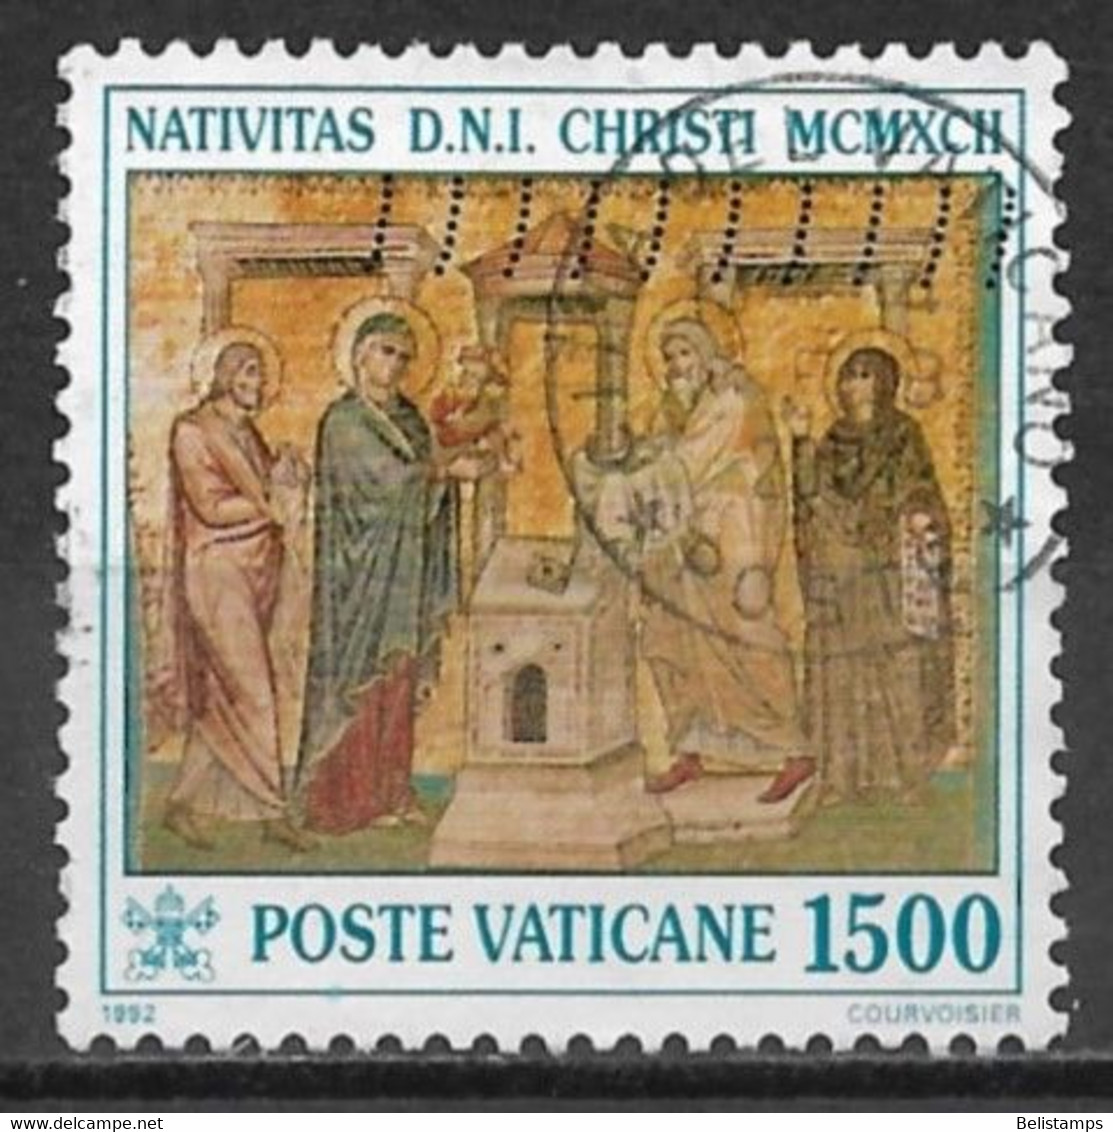 Vatican City 1992. Scott #915 (U) Christmas, Presentation To The Temple - Oblitérés